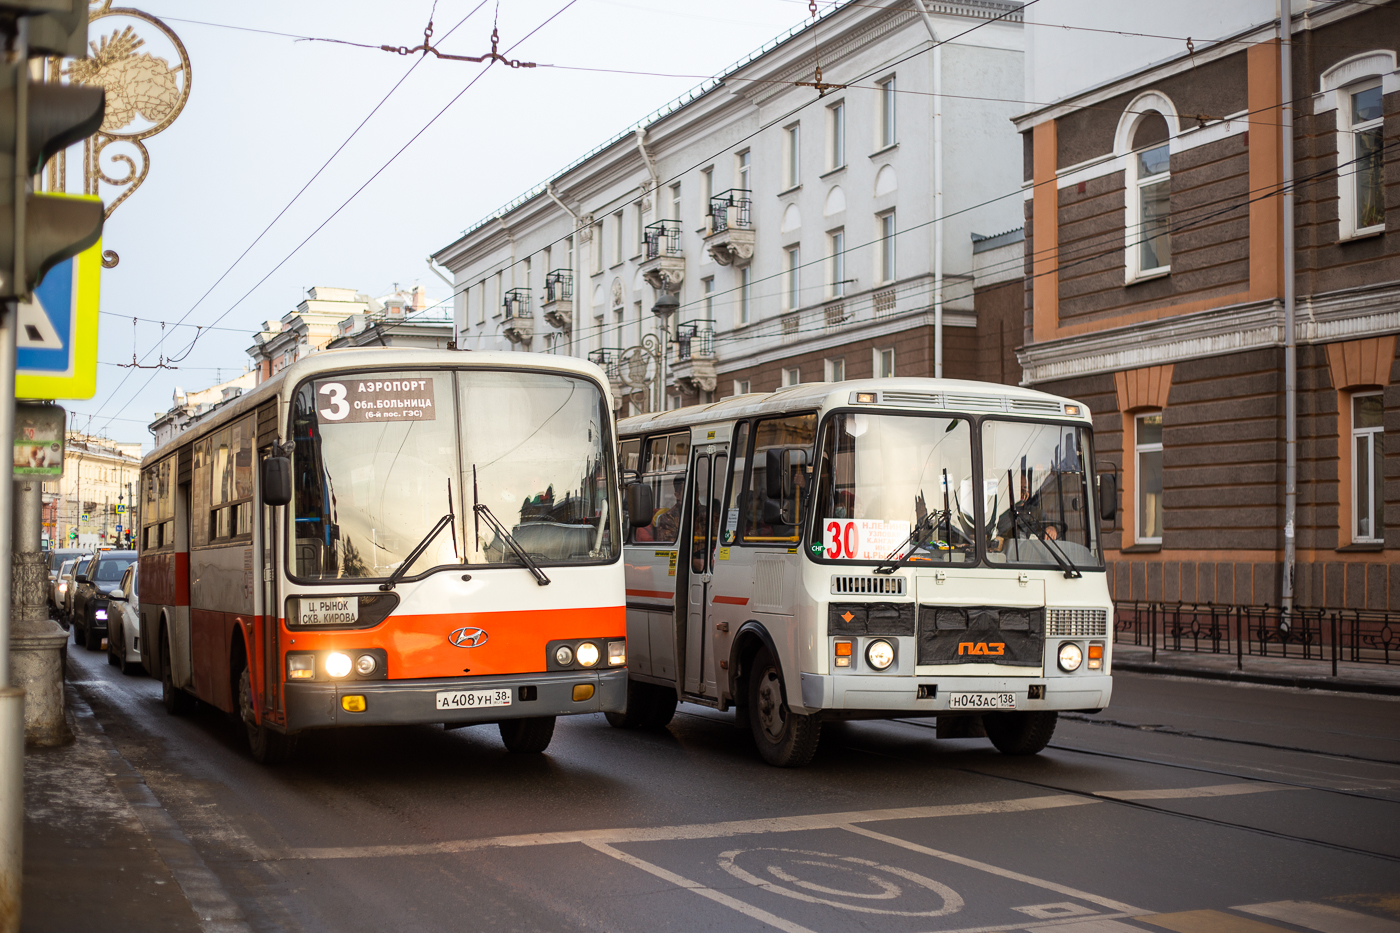 Схема автобусных маршрутов в Иркутске изменится 4, 6 и 7 мая из-за тренировки парада